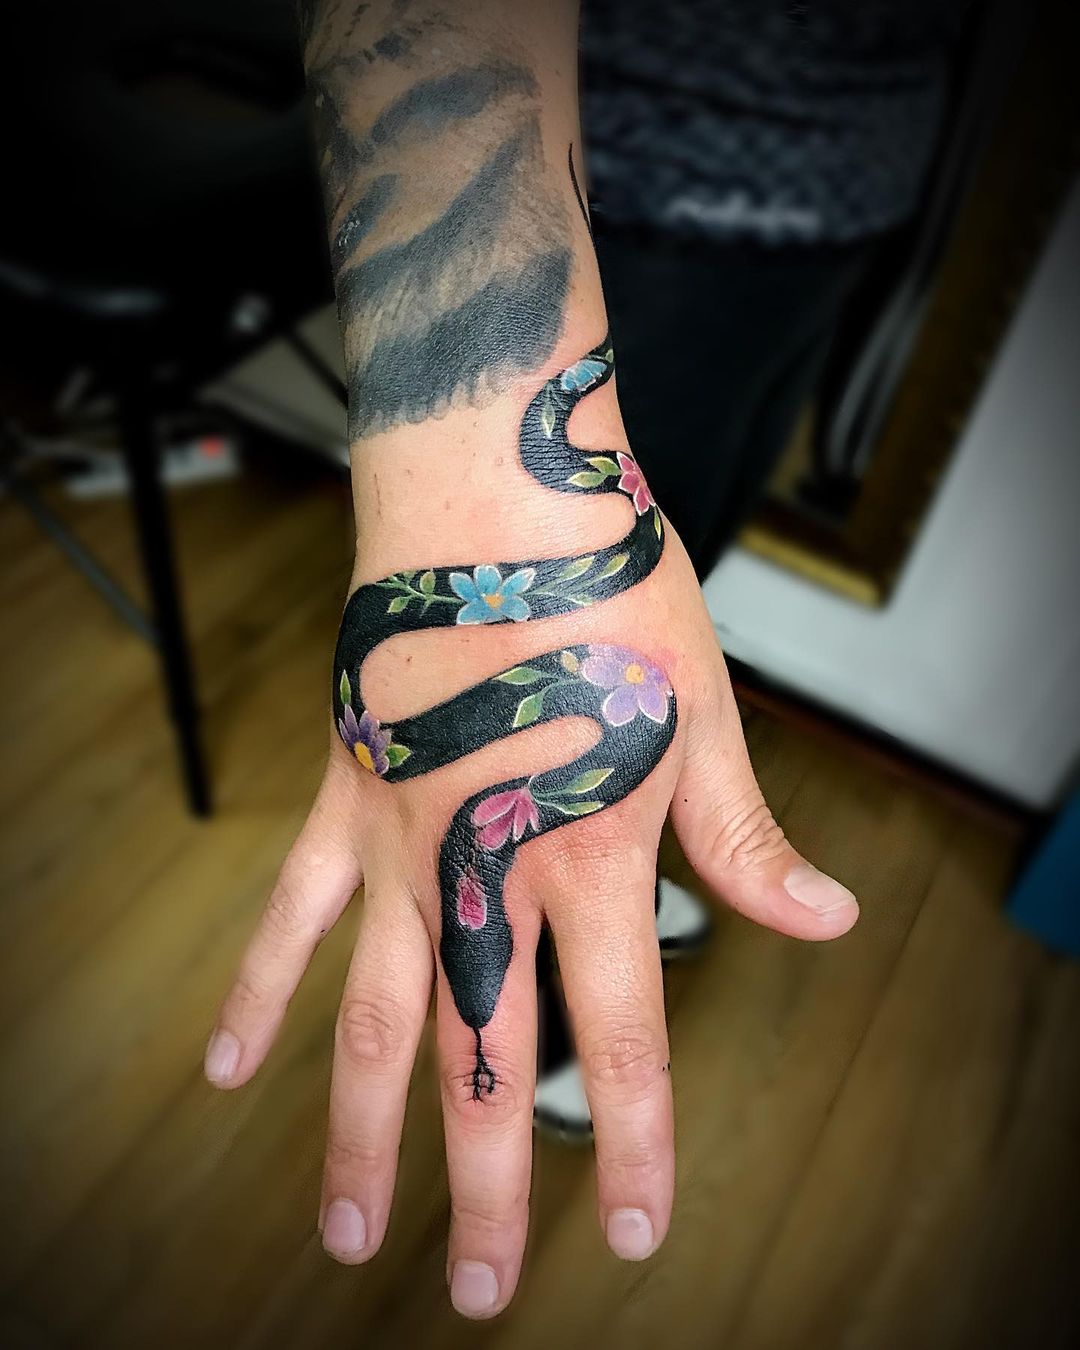 Diseño de serpiente y flor en la mano.